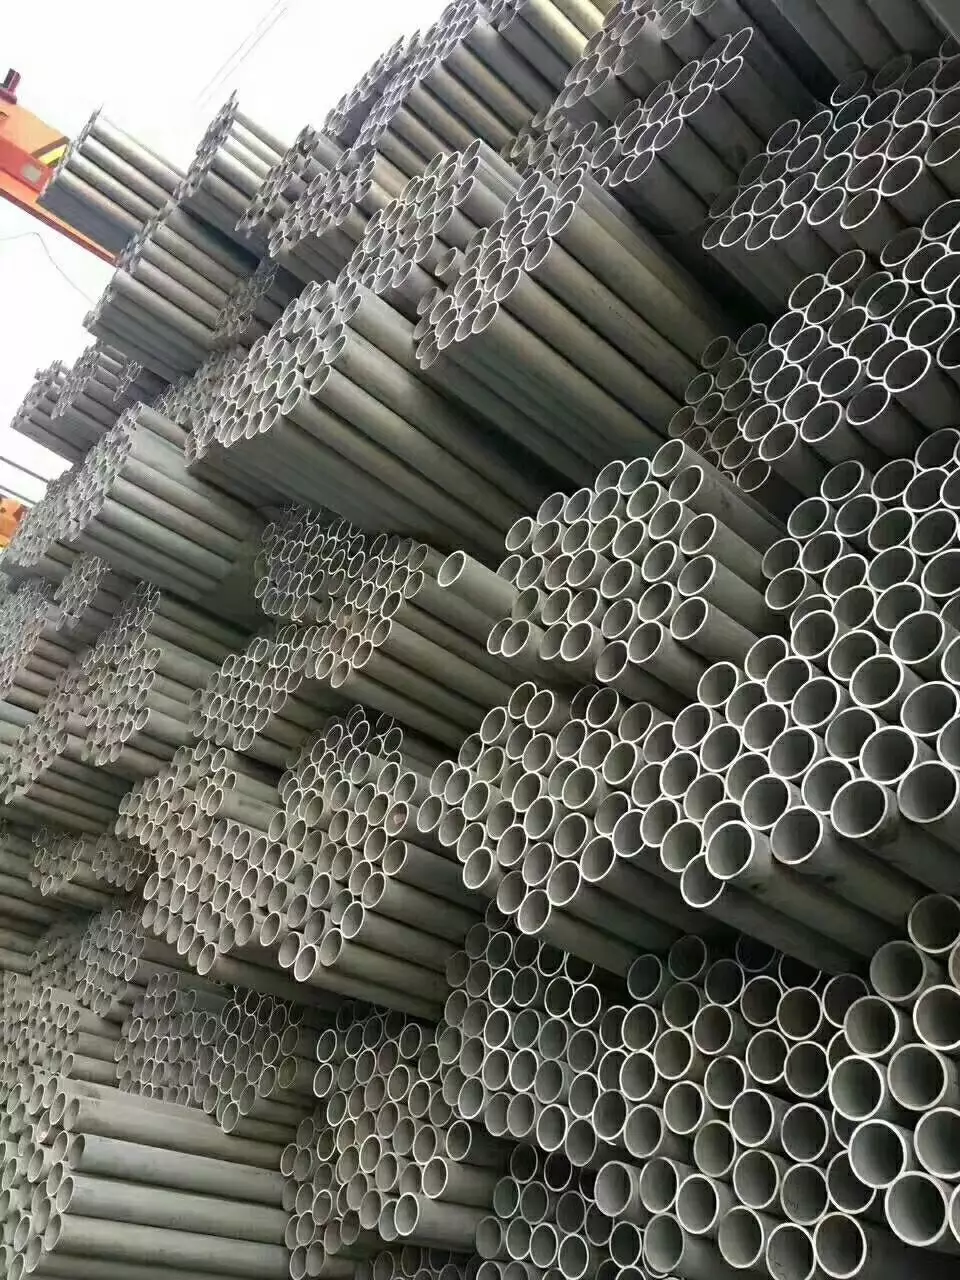 不锈钢管厂家 供应不锈钢管 不锈钢管价格 不锈钢管批发